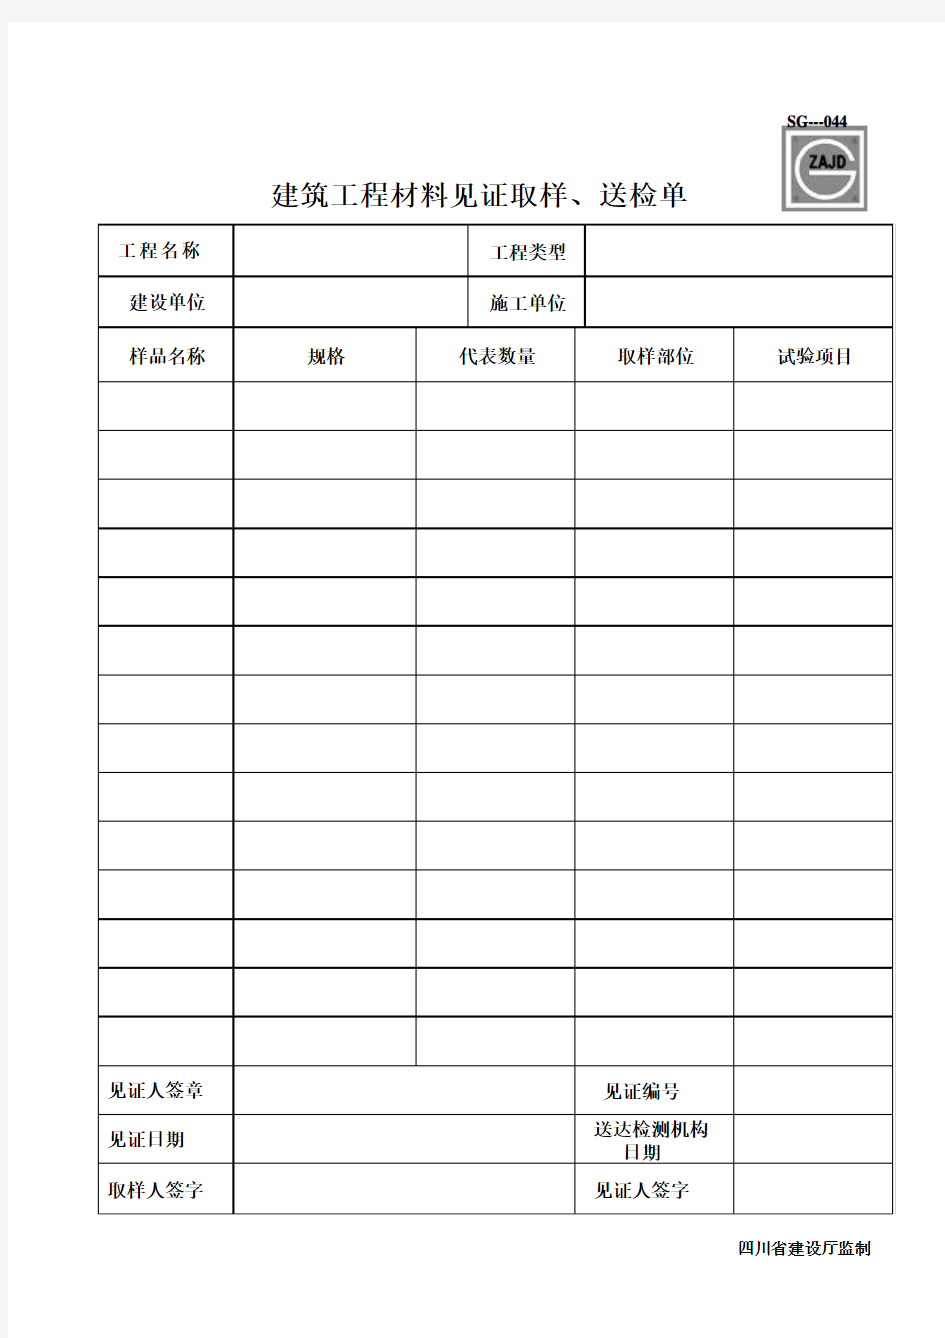 四川省建筑工程材料见证取样、送检单(建龙)